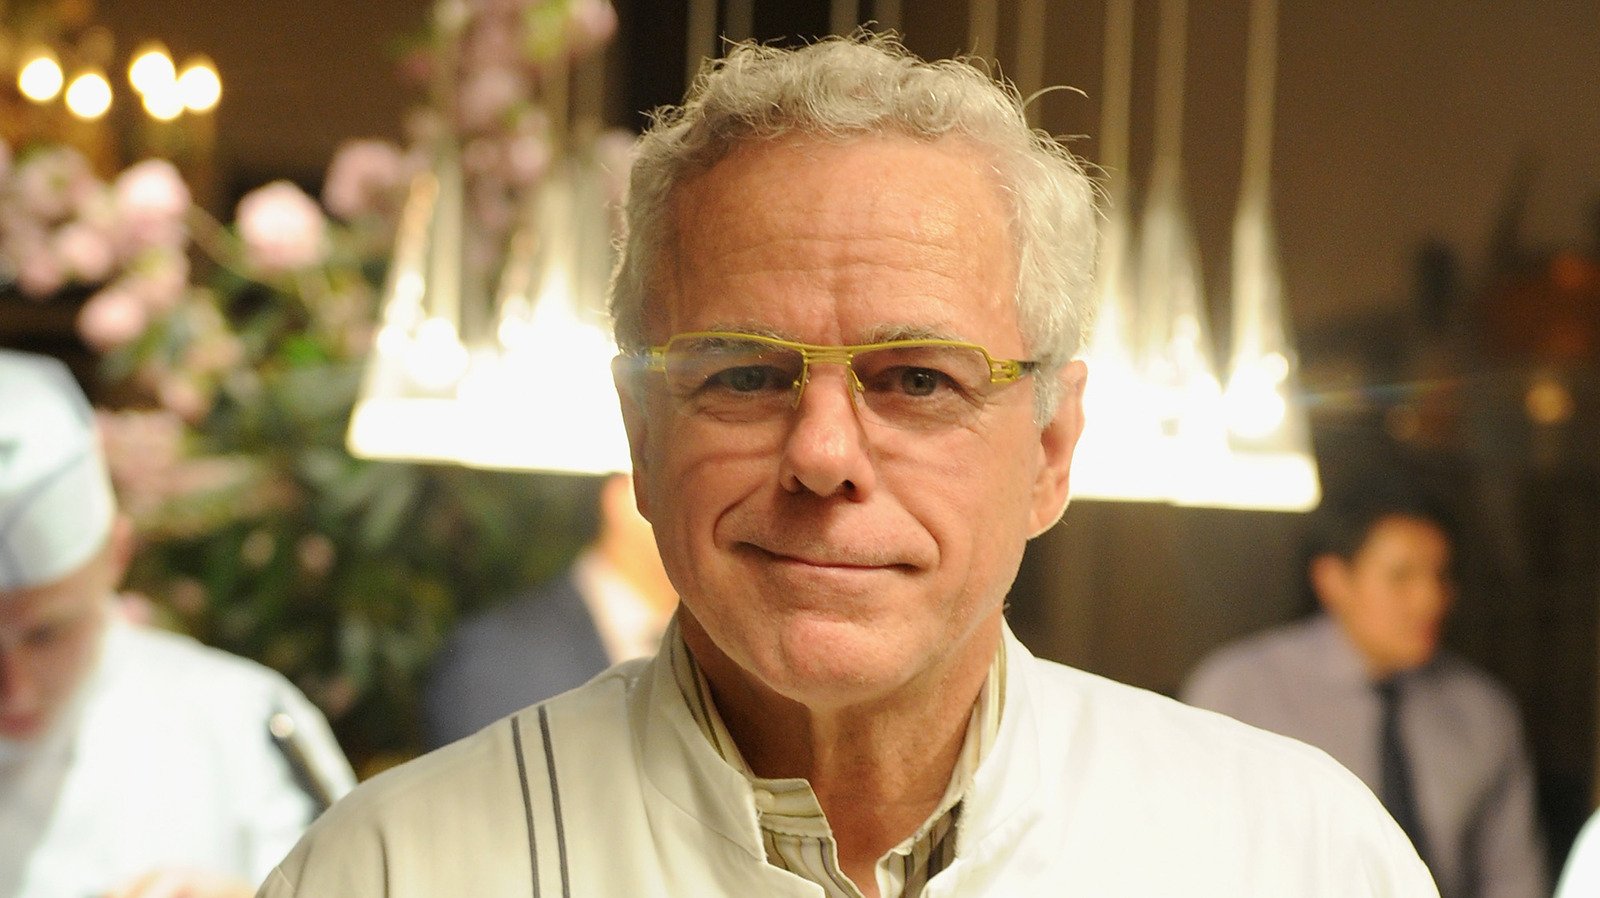 Дэвид Були, отмеченный наградами шеф-повар Нью-Йорка, умер в возрасте 70 лет